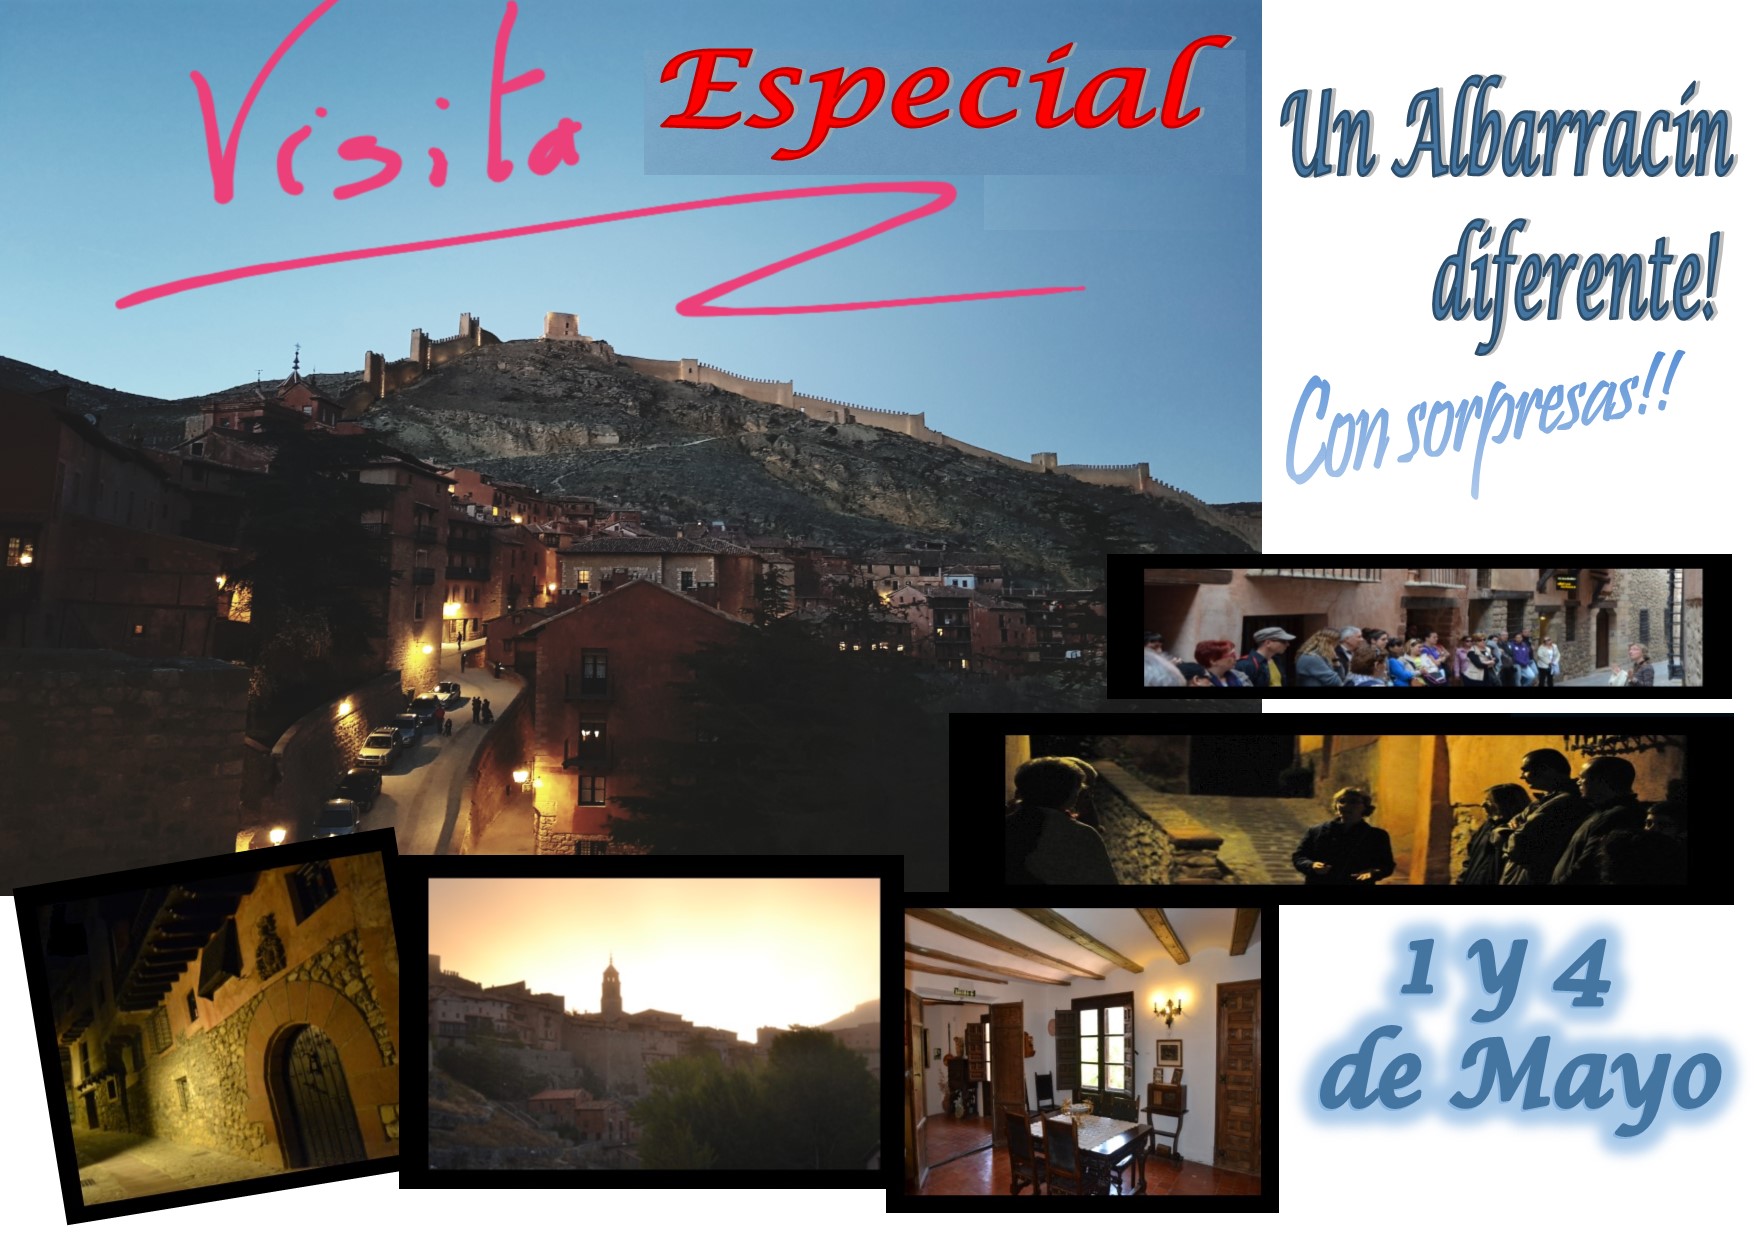 El 1 y 4 de Mayo…Albarracín Especial…con sorpresas!